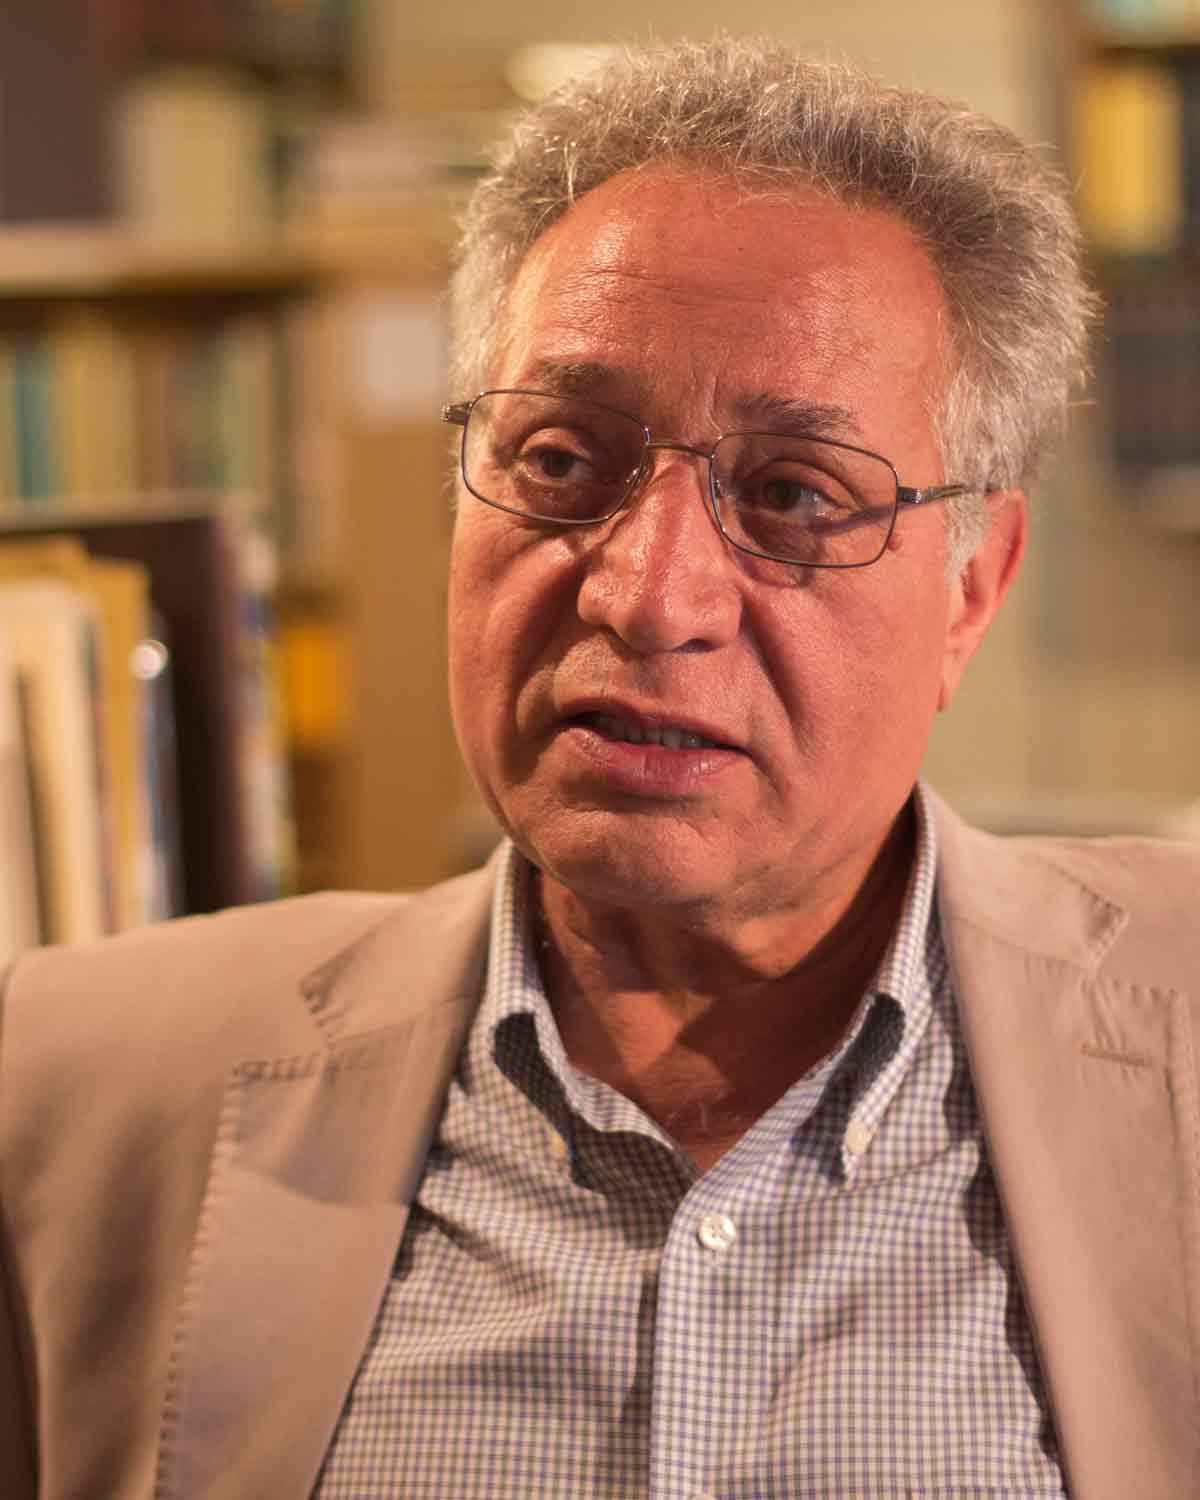 Ahmad Karimi-Hakkak